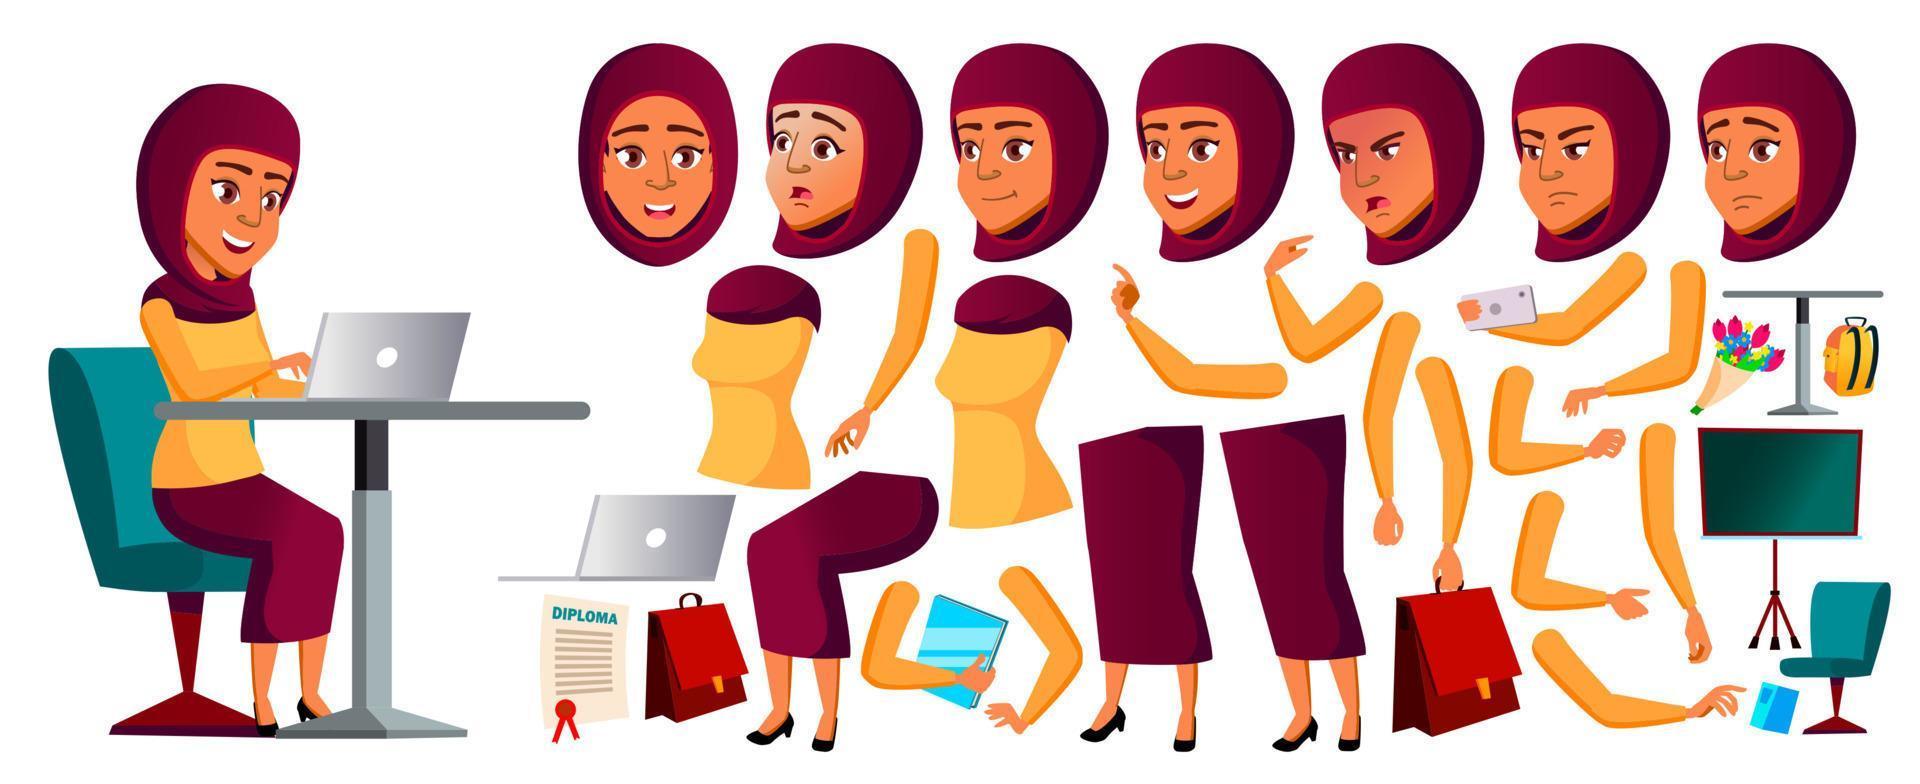 Teenager-Mädchen-Vektor. arabisch, muslim. Animationserstellungsset. Gesicht Emotionen, Gesten. kaukasisch, positiv. animiert. für Banner, Flyer, Webdesign. isolierte karikaturillustration vektor